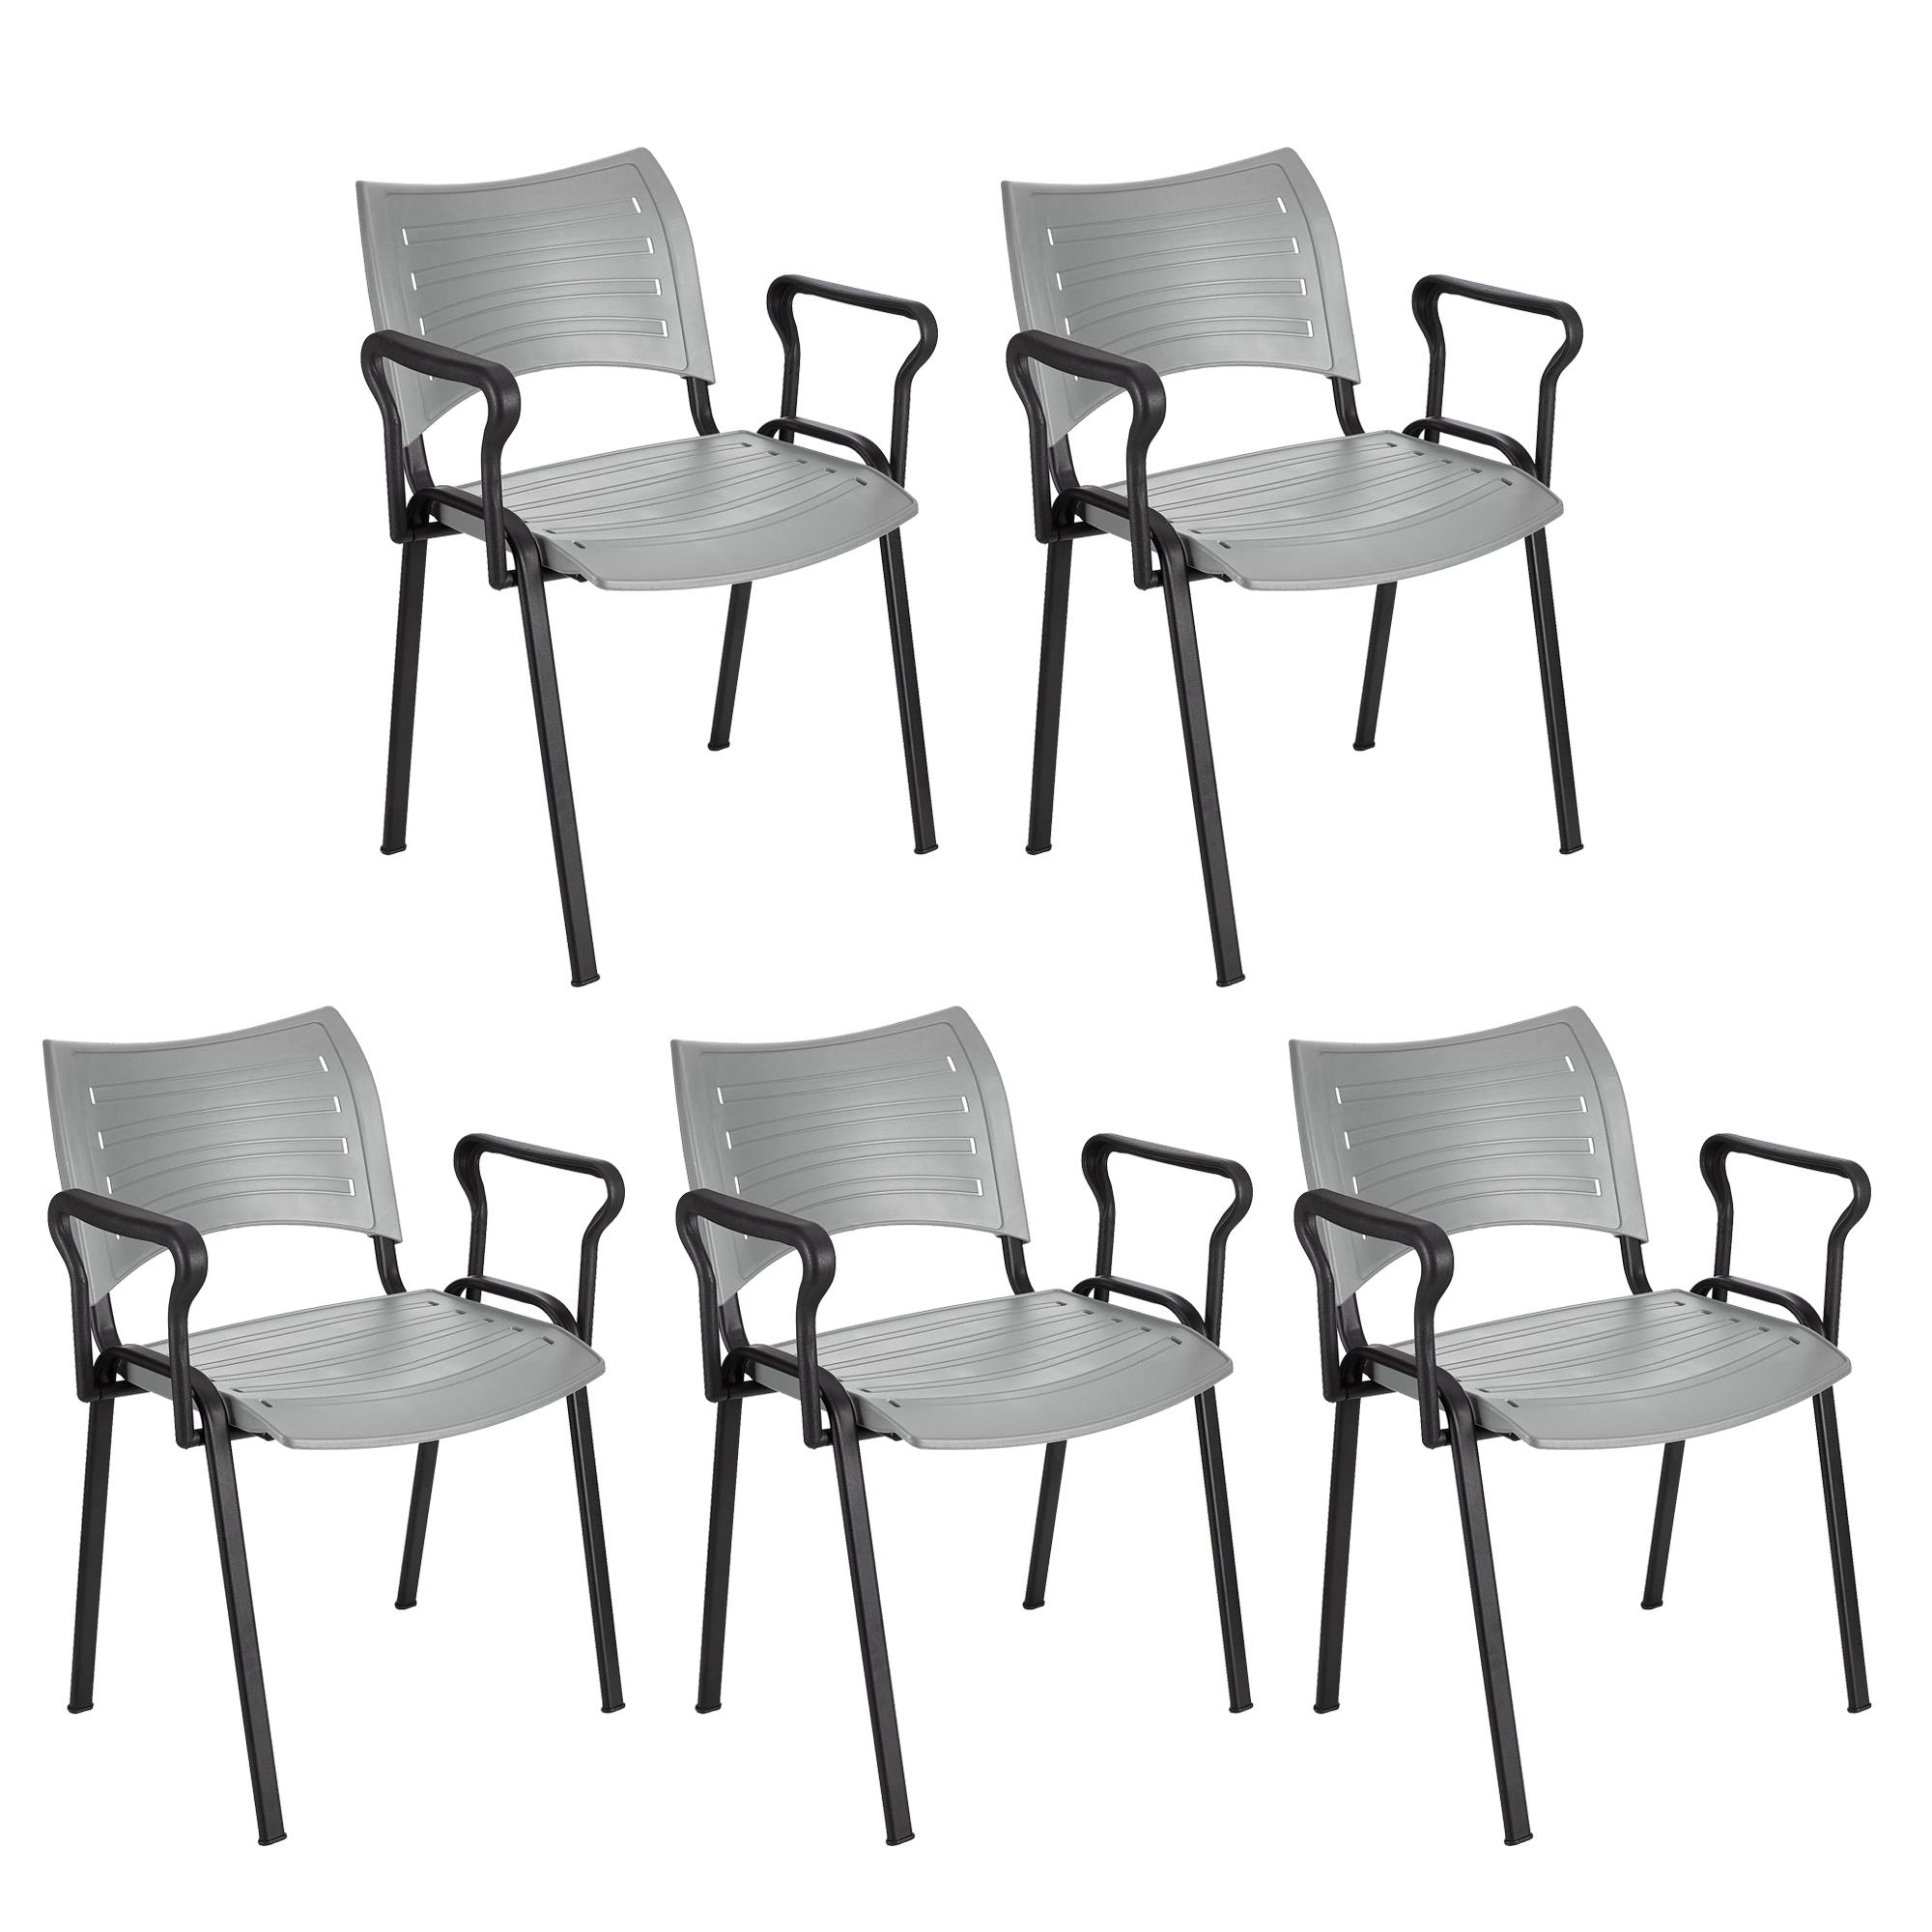 Lote 5 Cadeiras de Visita ELVA COM BRAÇOS, Confortável, Pernas Pretas, Cor Cinzento